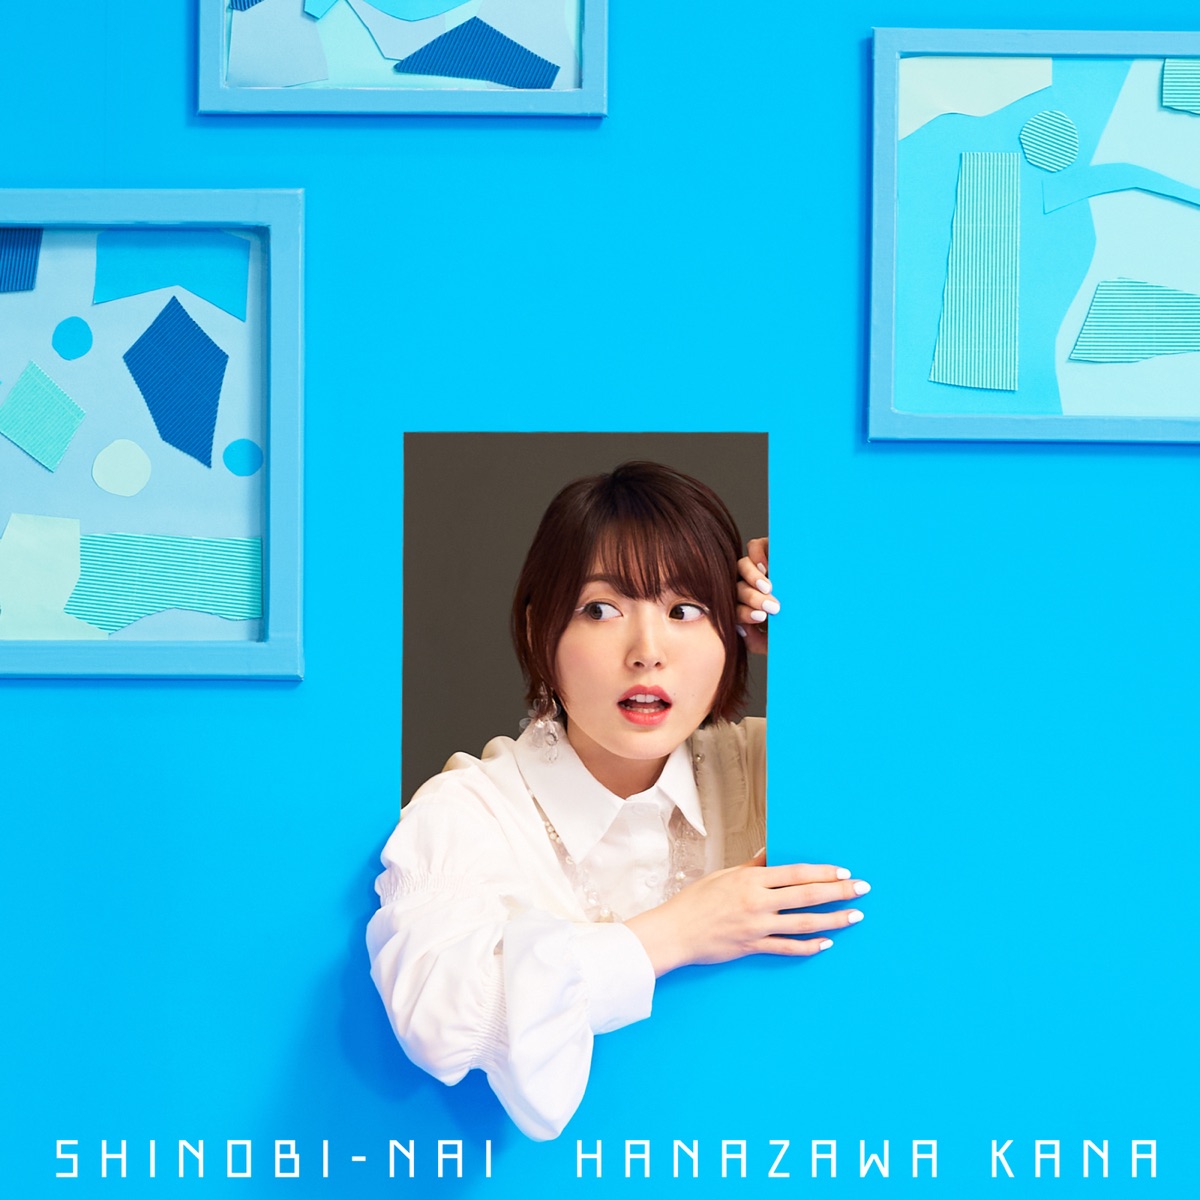 Cover art for『Kana Hanazawa - SHINOBI-NAI』from the release『SHINOBI-NAI』